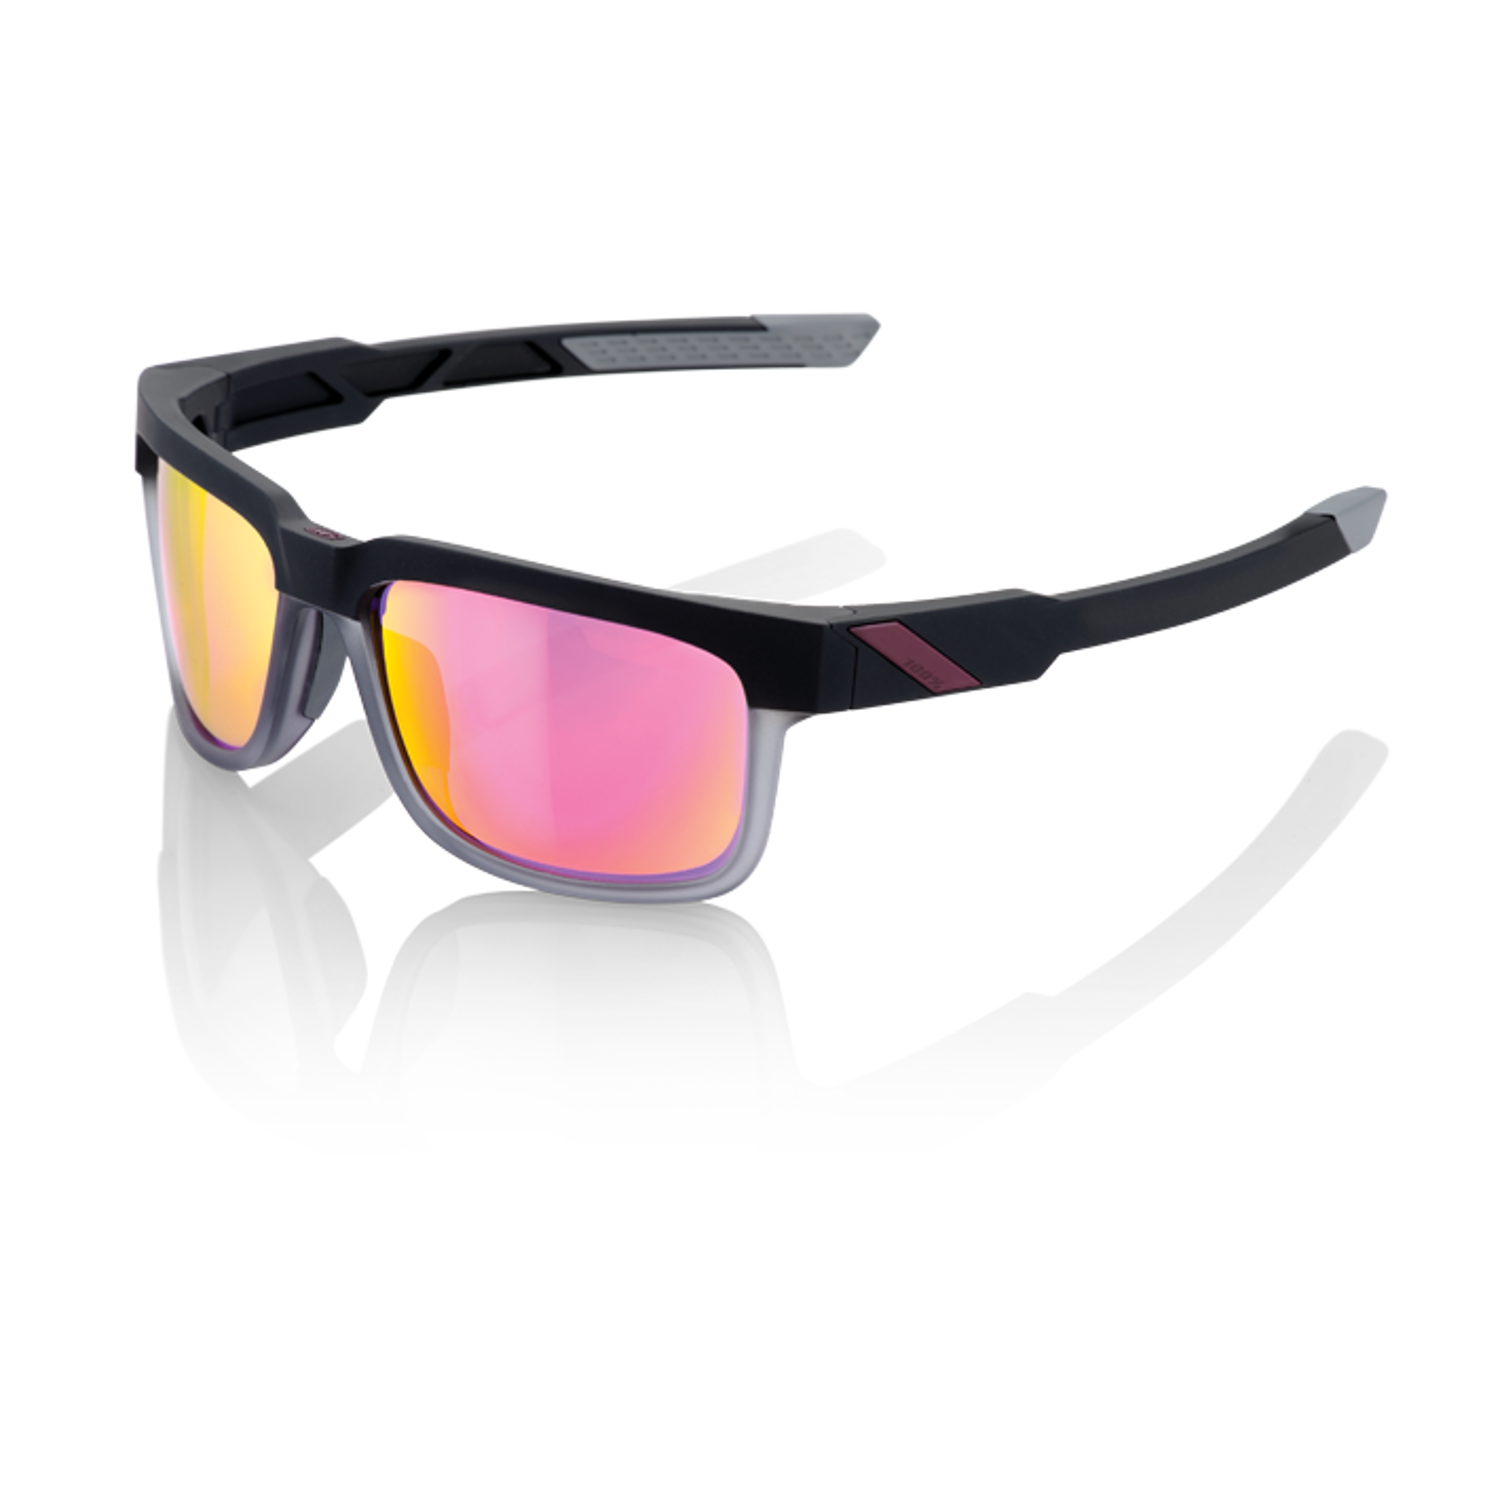 100% Sportbrille Type-S Soft Tact Graphite - Violett verspiegelt